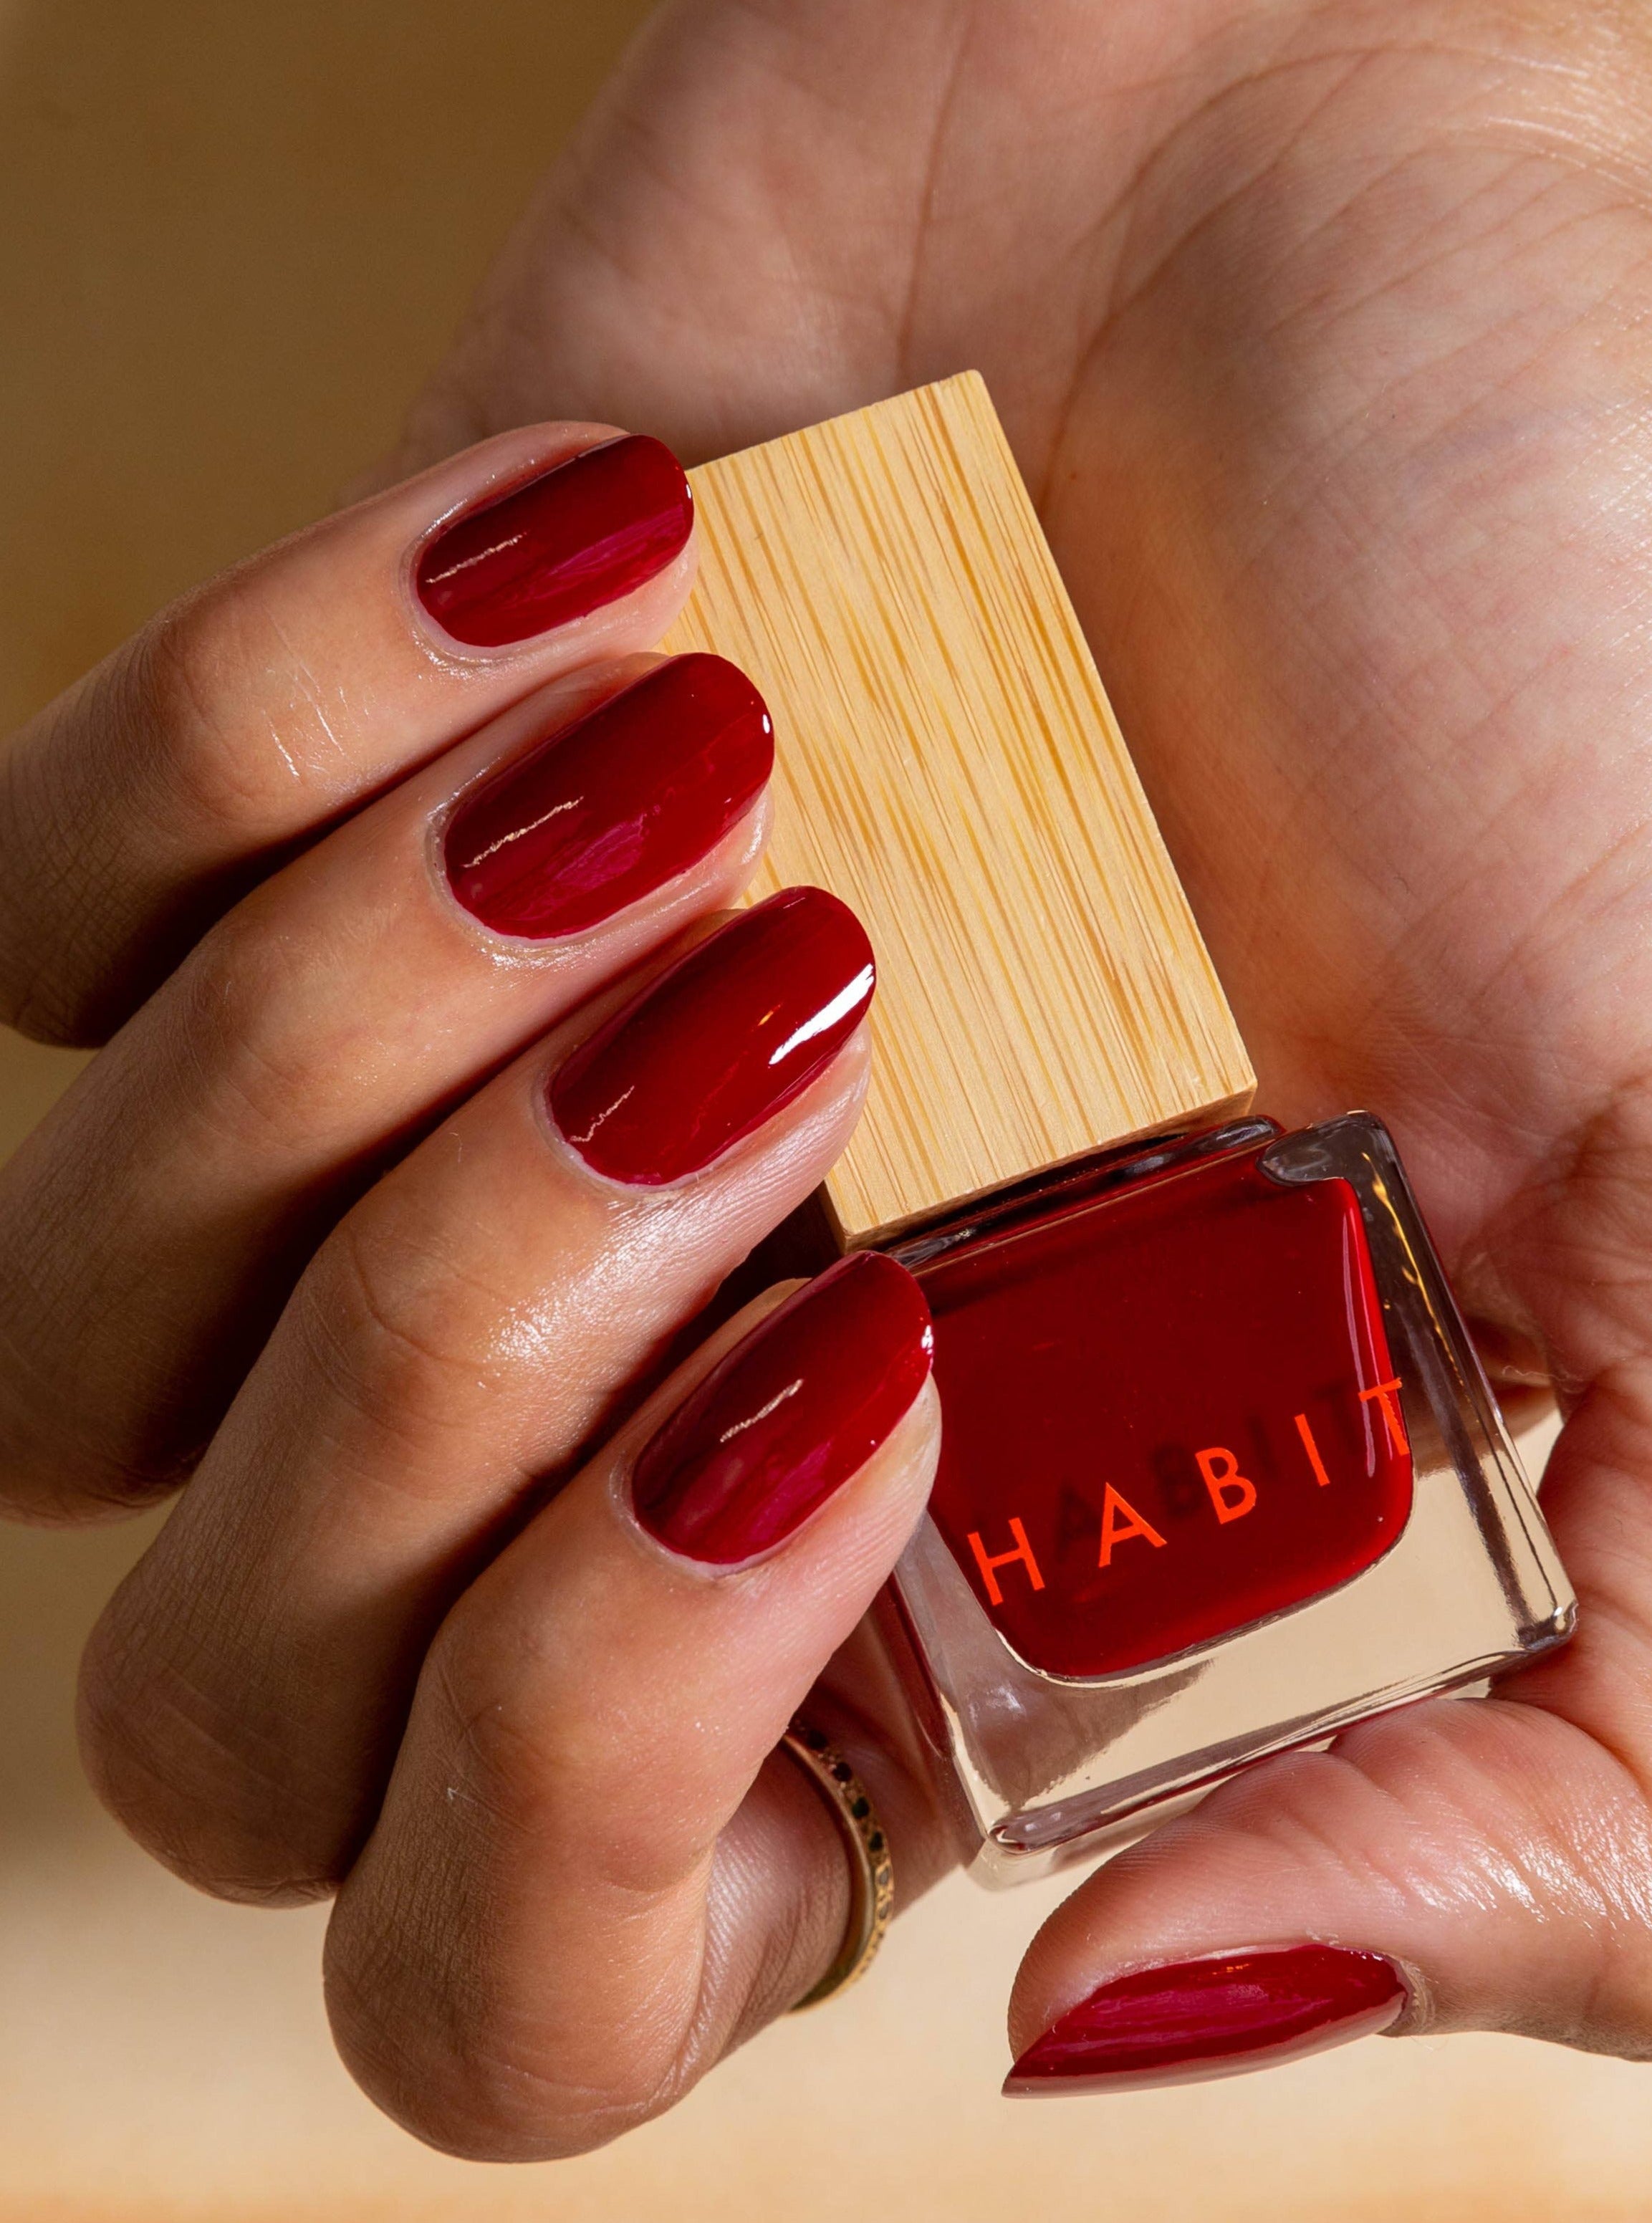 Habit Cosmetics Nail Polish - 15 Santa Sangre